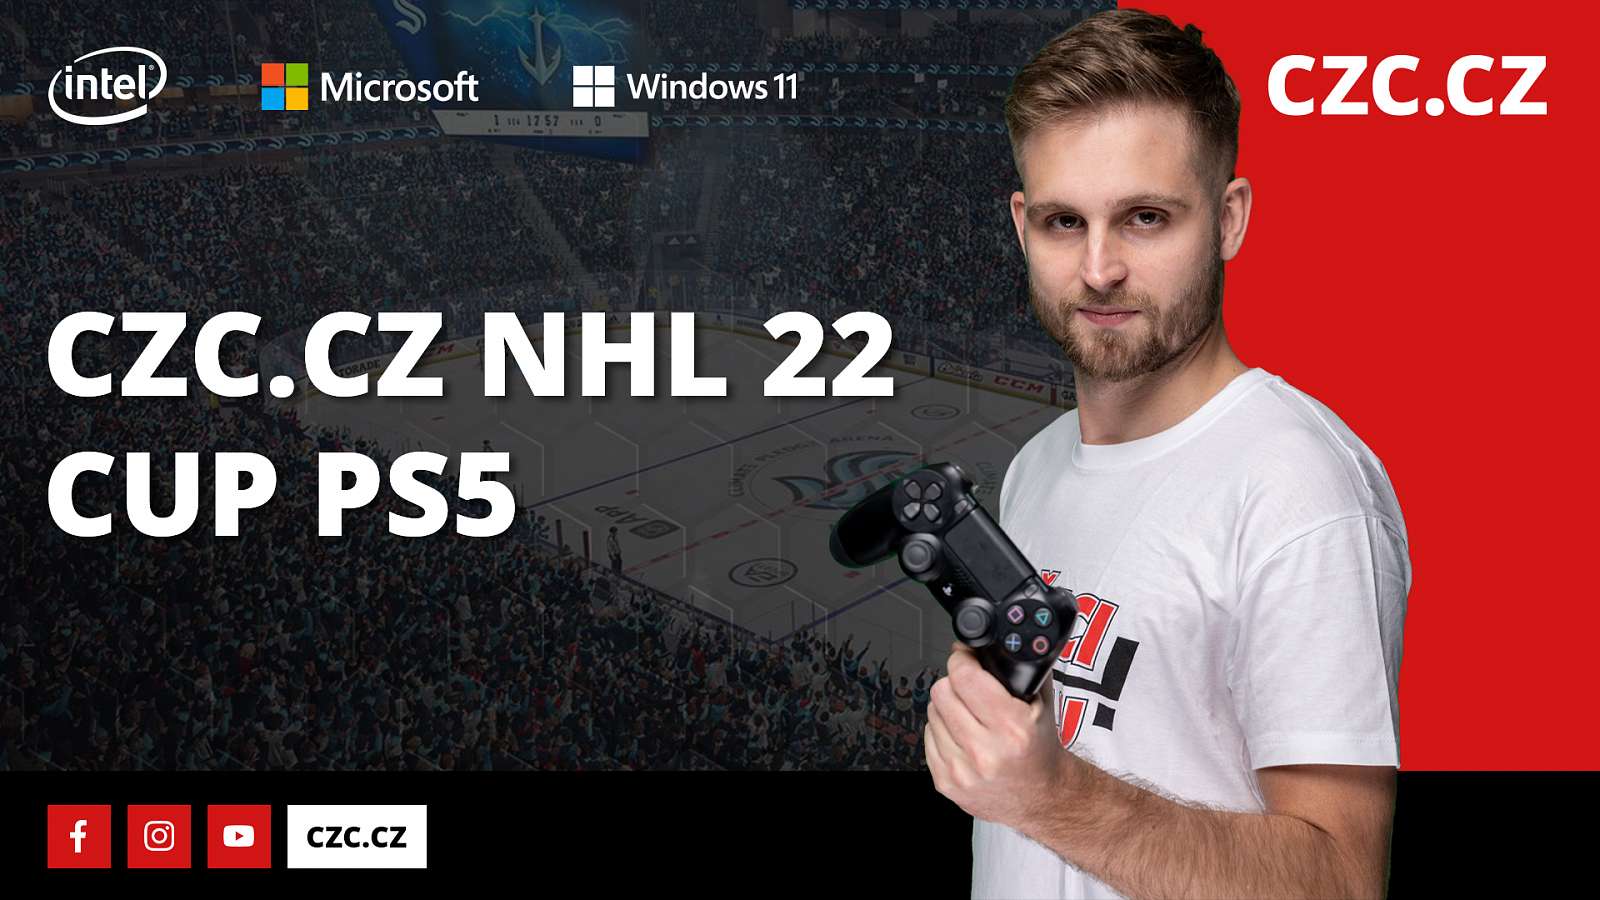 Staň se Ovečkinem na virtuálním ledě! Zaregistruj se do CZC.cz NHL 22 Cupu a buď nejlepší